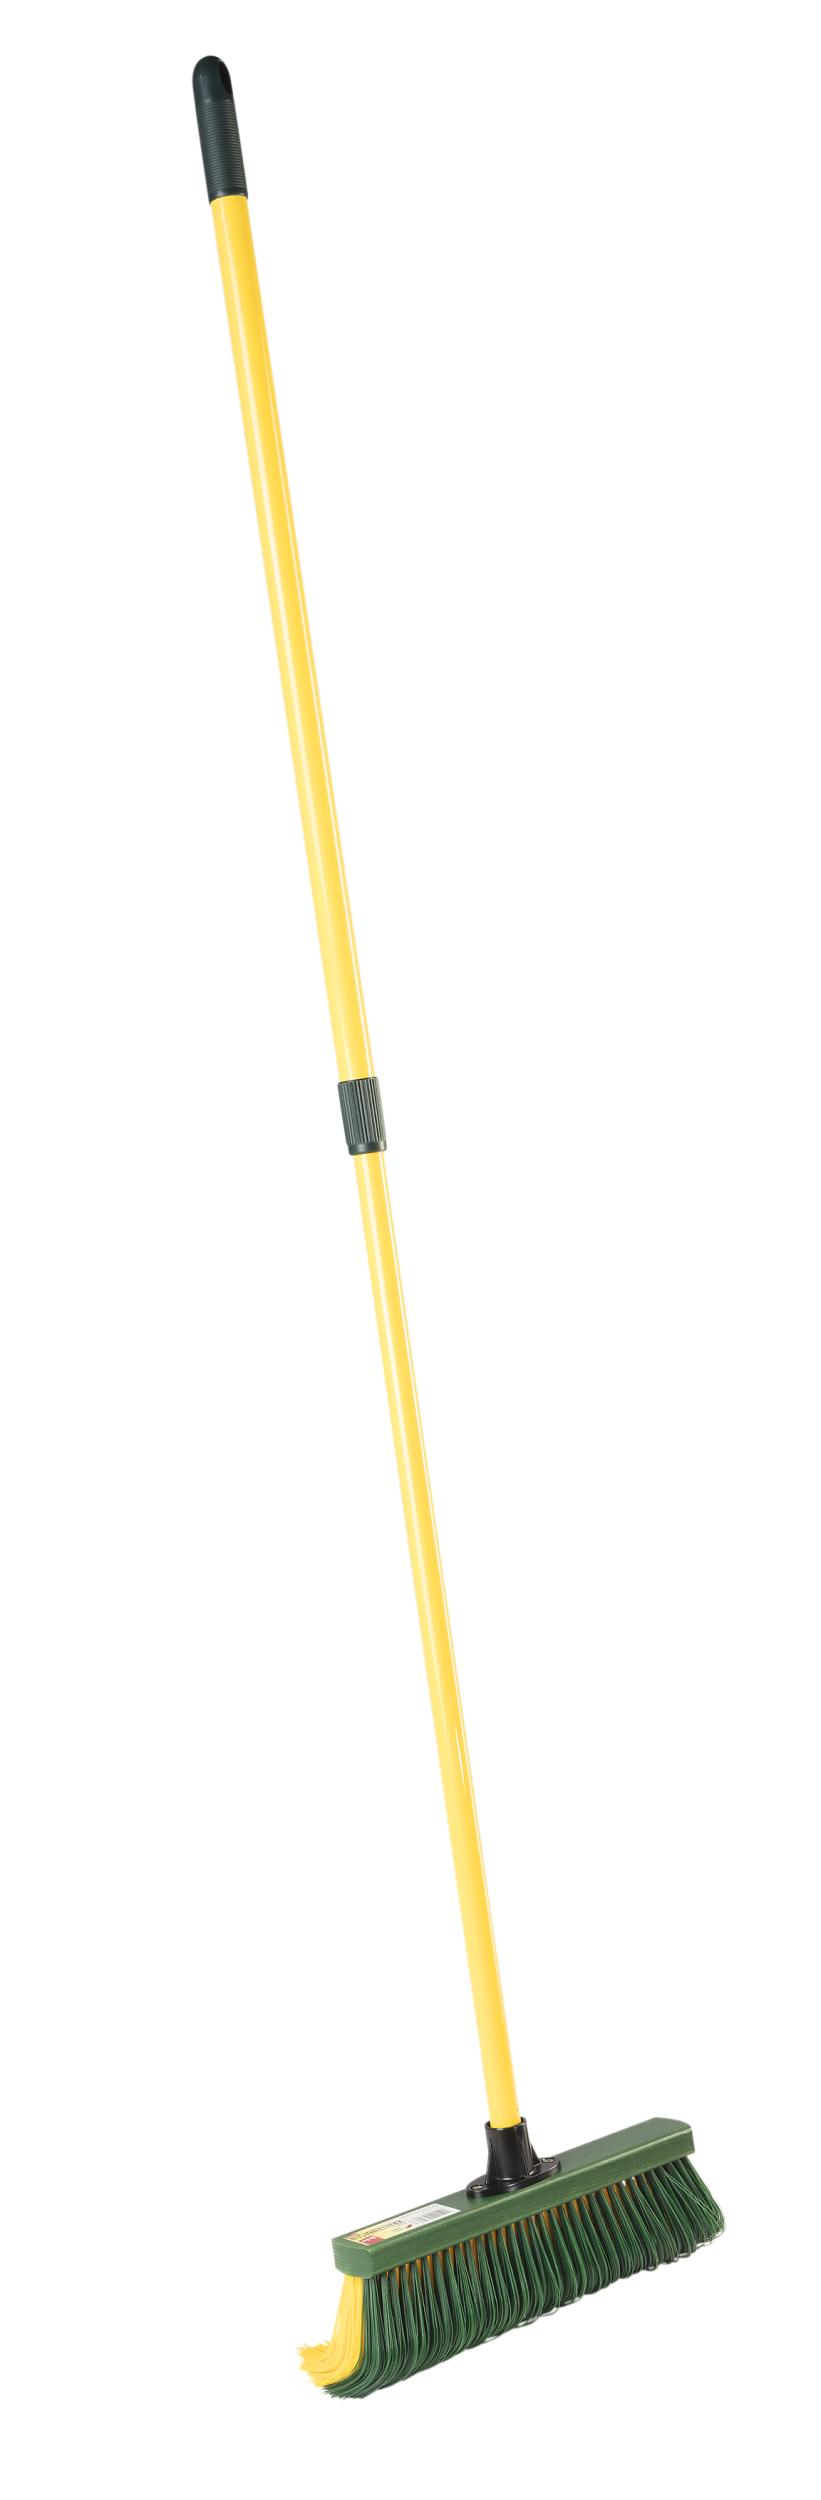 Steuber Krallenbesen mit Teleskopstiel, 35 cm breit